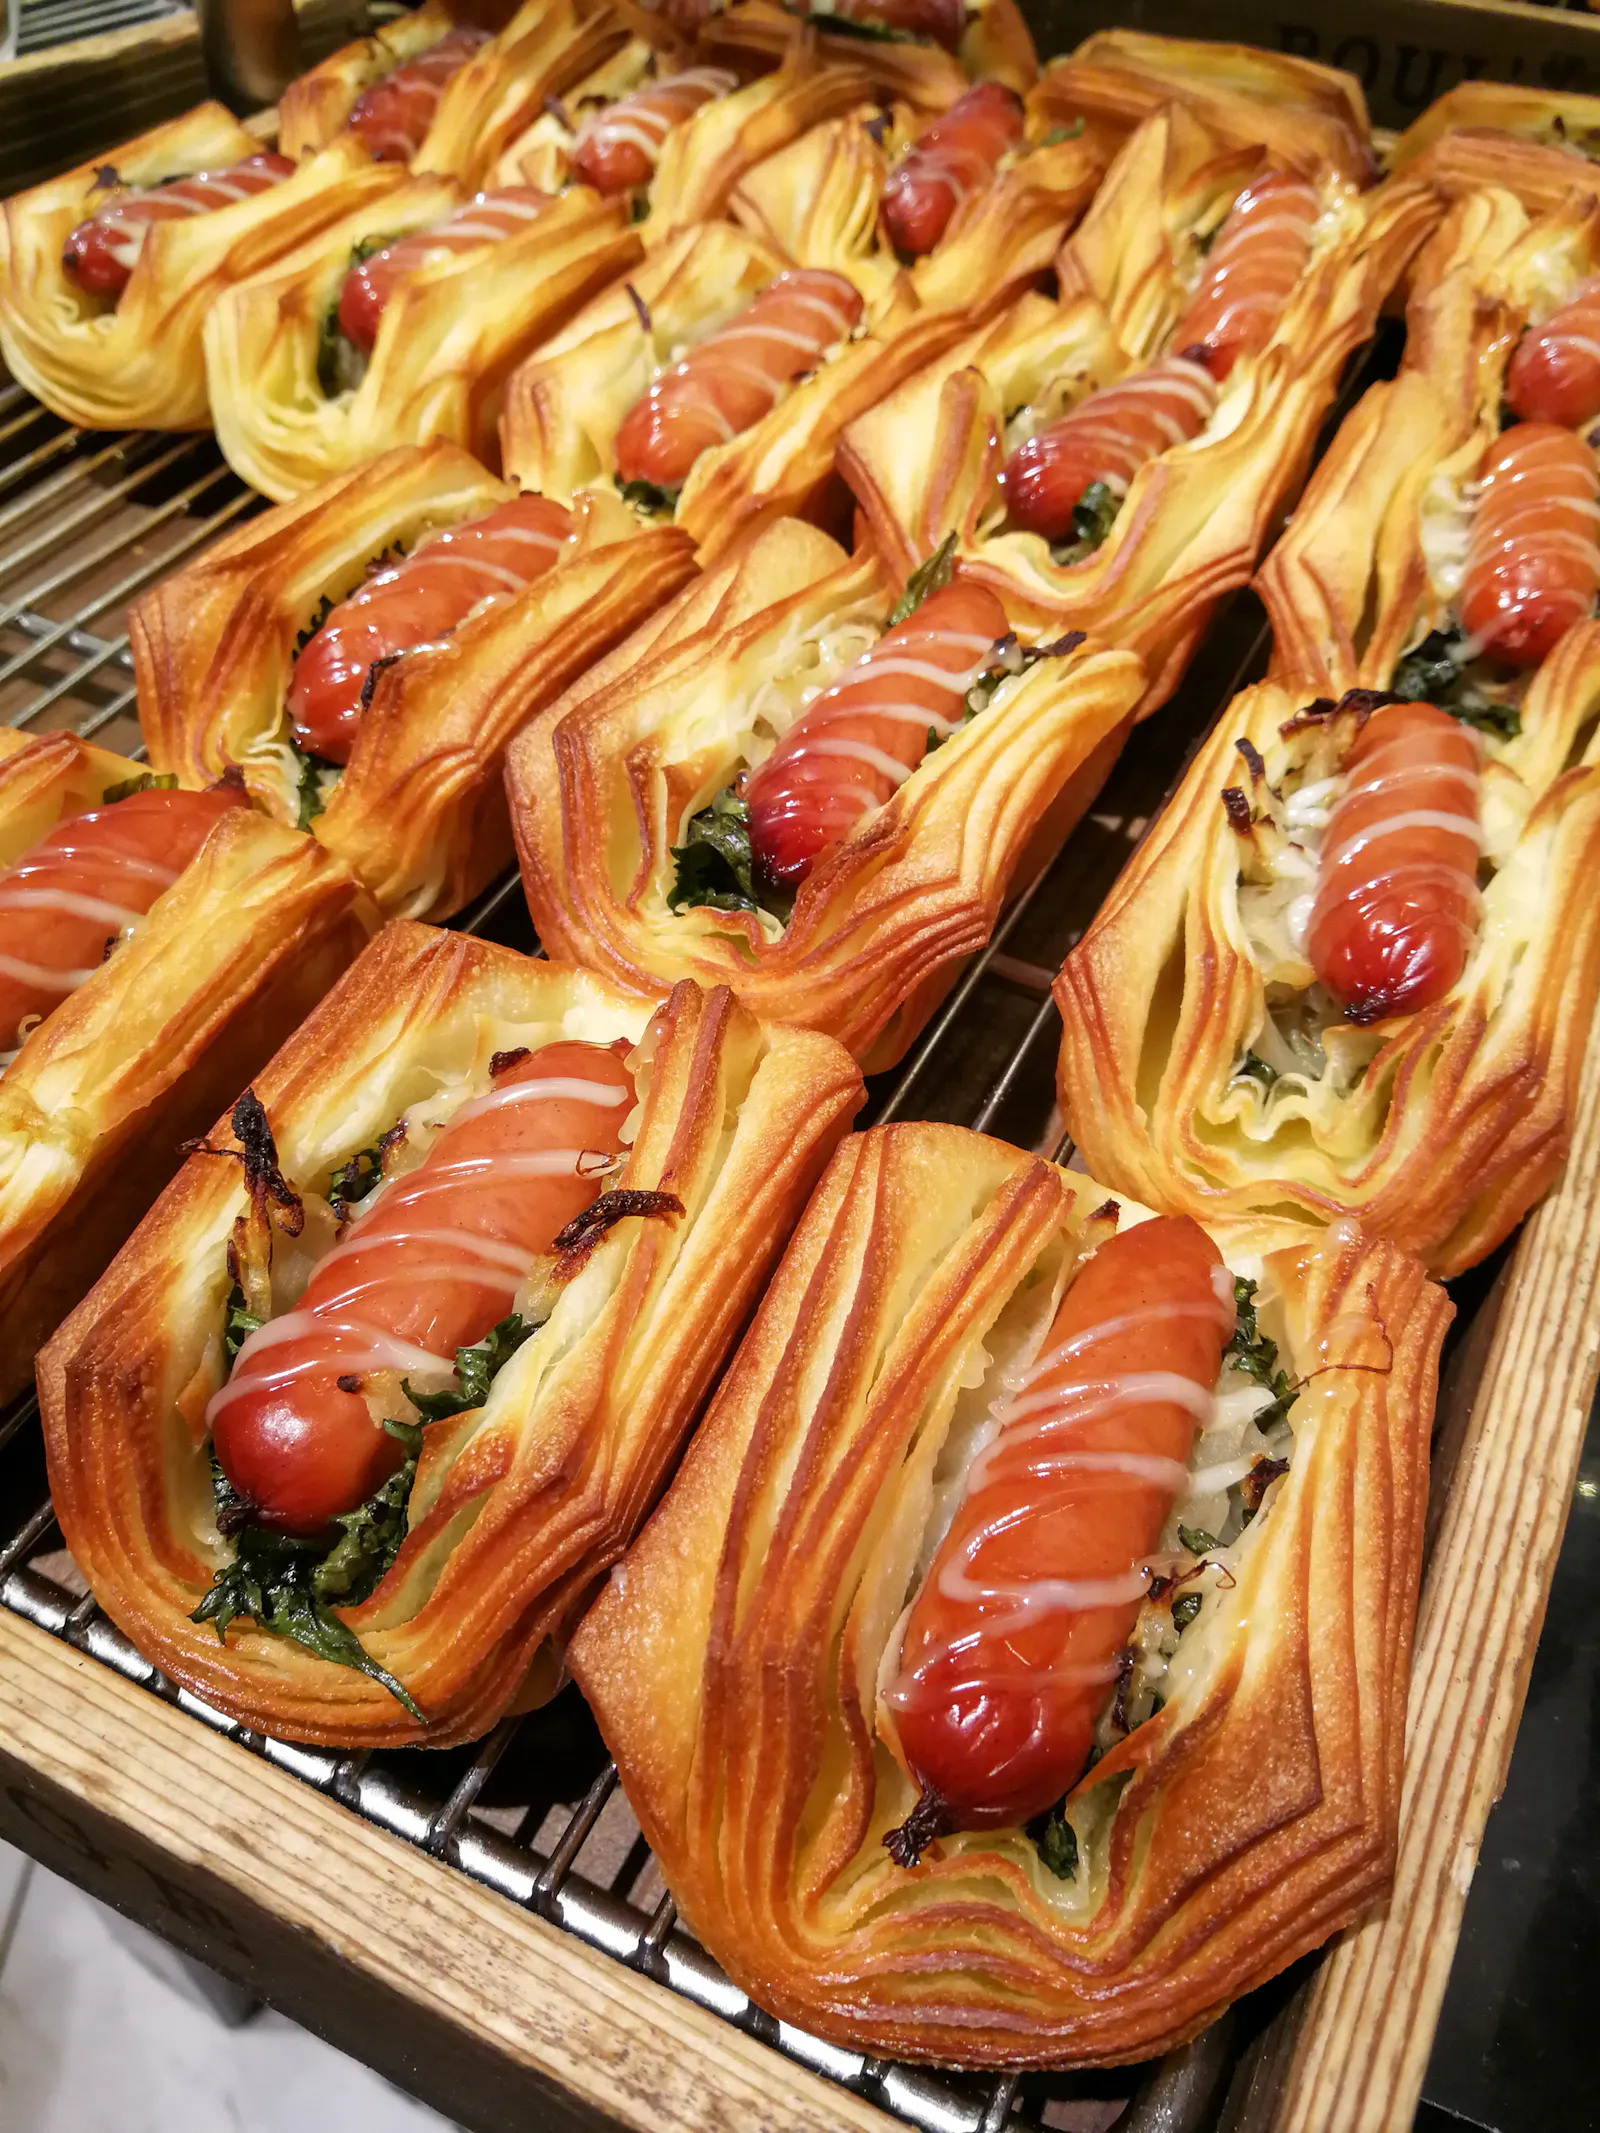 Für deutsche Augen außergewöhnliche Kreationen und Kombinationen sind in vielen japanischen Handwerksbäckereien Alltag. Bis zu 200 verschiedene Sorten werden pro Tag gebacken.